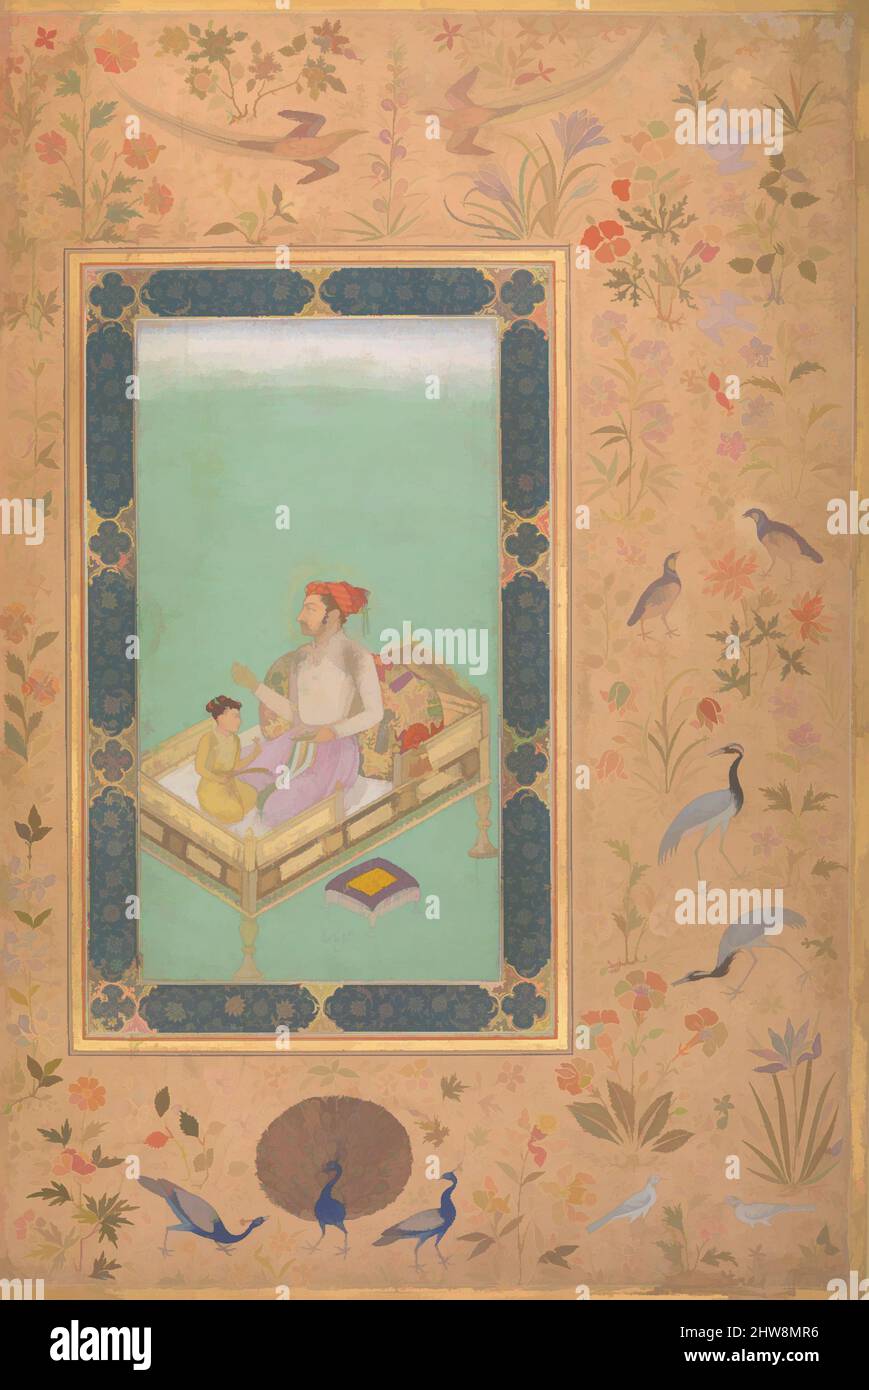 Arte ispirata dall'imperatore Shah Jahan con suo Figlio Dara Shikoh', Folio dell'album Shah Jahan, verso: CA. 1620; recto: ca. 1530–50, attribuito all'India, inchiostro, acquerello opaco e oro su carta, H. 15 5/16 poll. (38,9 cm), Codices, Pittura di Nanha, questa immagine superbamente dipinta, opere classiche modernizzate da Artotop con un tuffo di modernità. Forme, colore e valore, impatto visivo accattivante sulle emozioni artistiche attraverso la libertà delle opere d'arte in modo contemporaneo. Un messaggio senza tempo che persegue una nuova direzione selvaggiamente creativa. Artisti che si rivolgono al supporto digitale e creano l'NFT Artotop Foto Stock